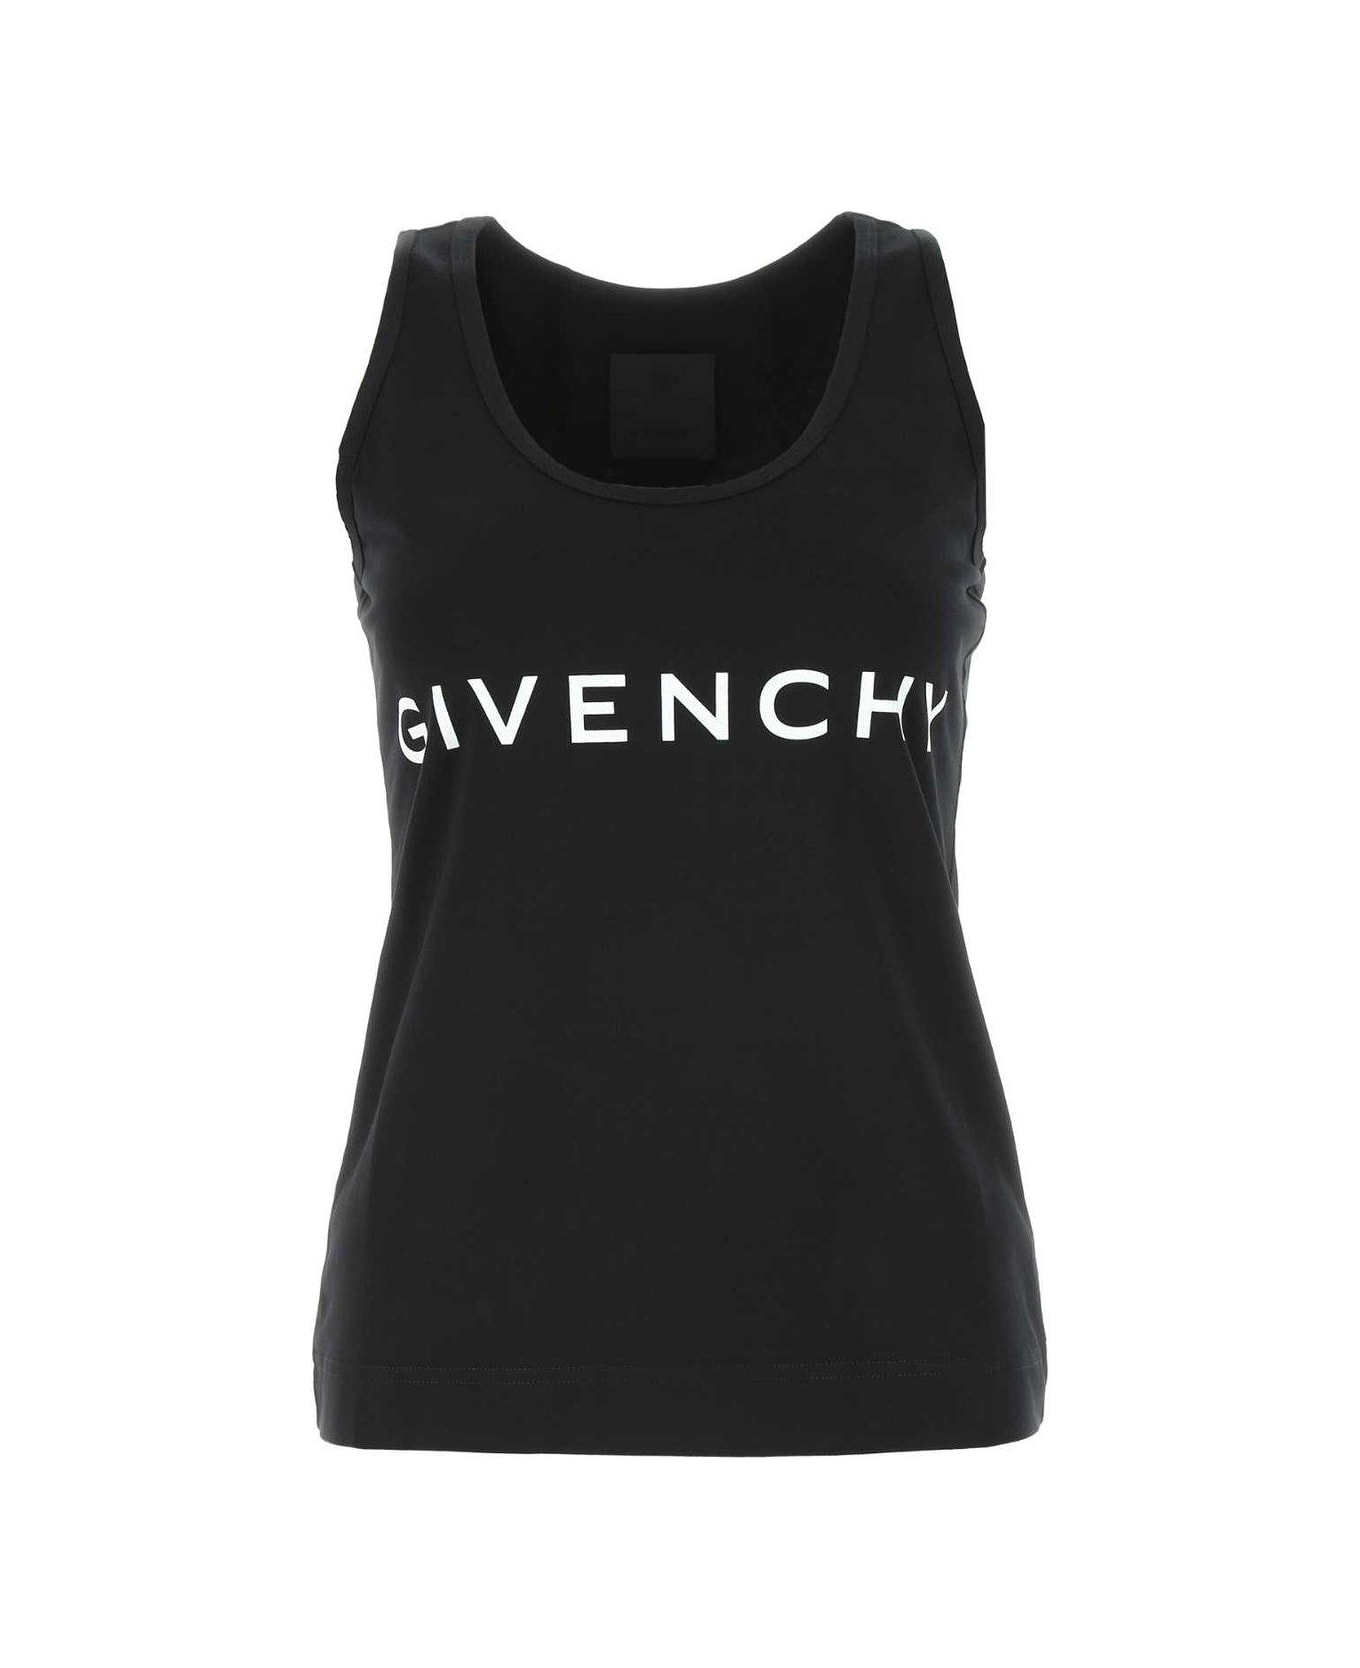 Givenchy Logo Printed Tank Top - Black